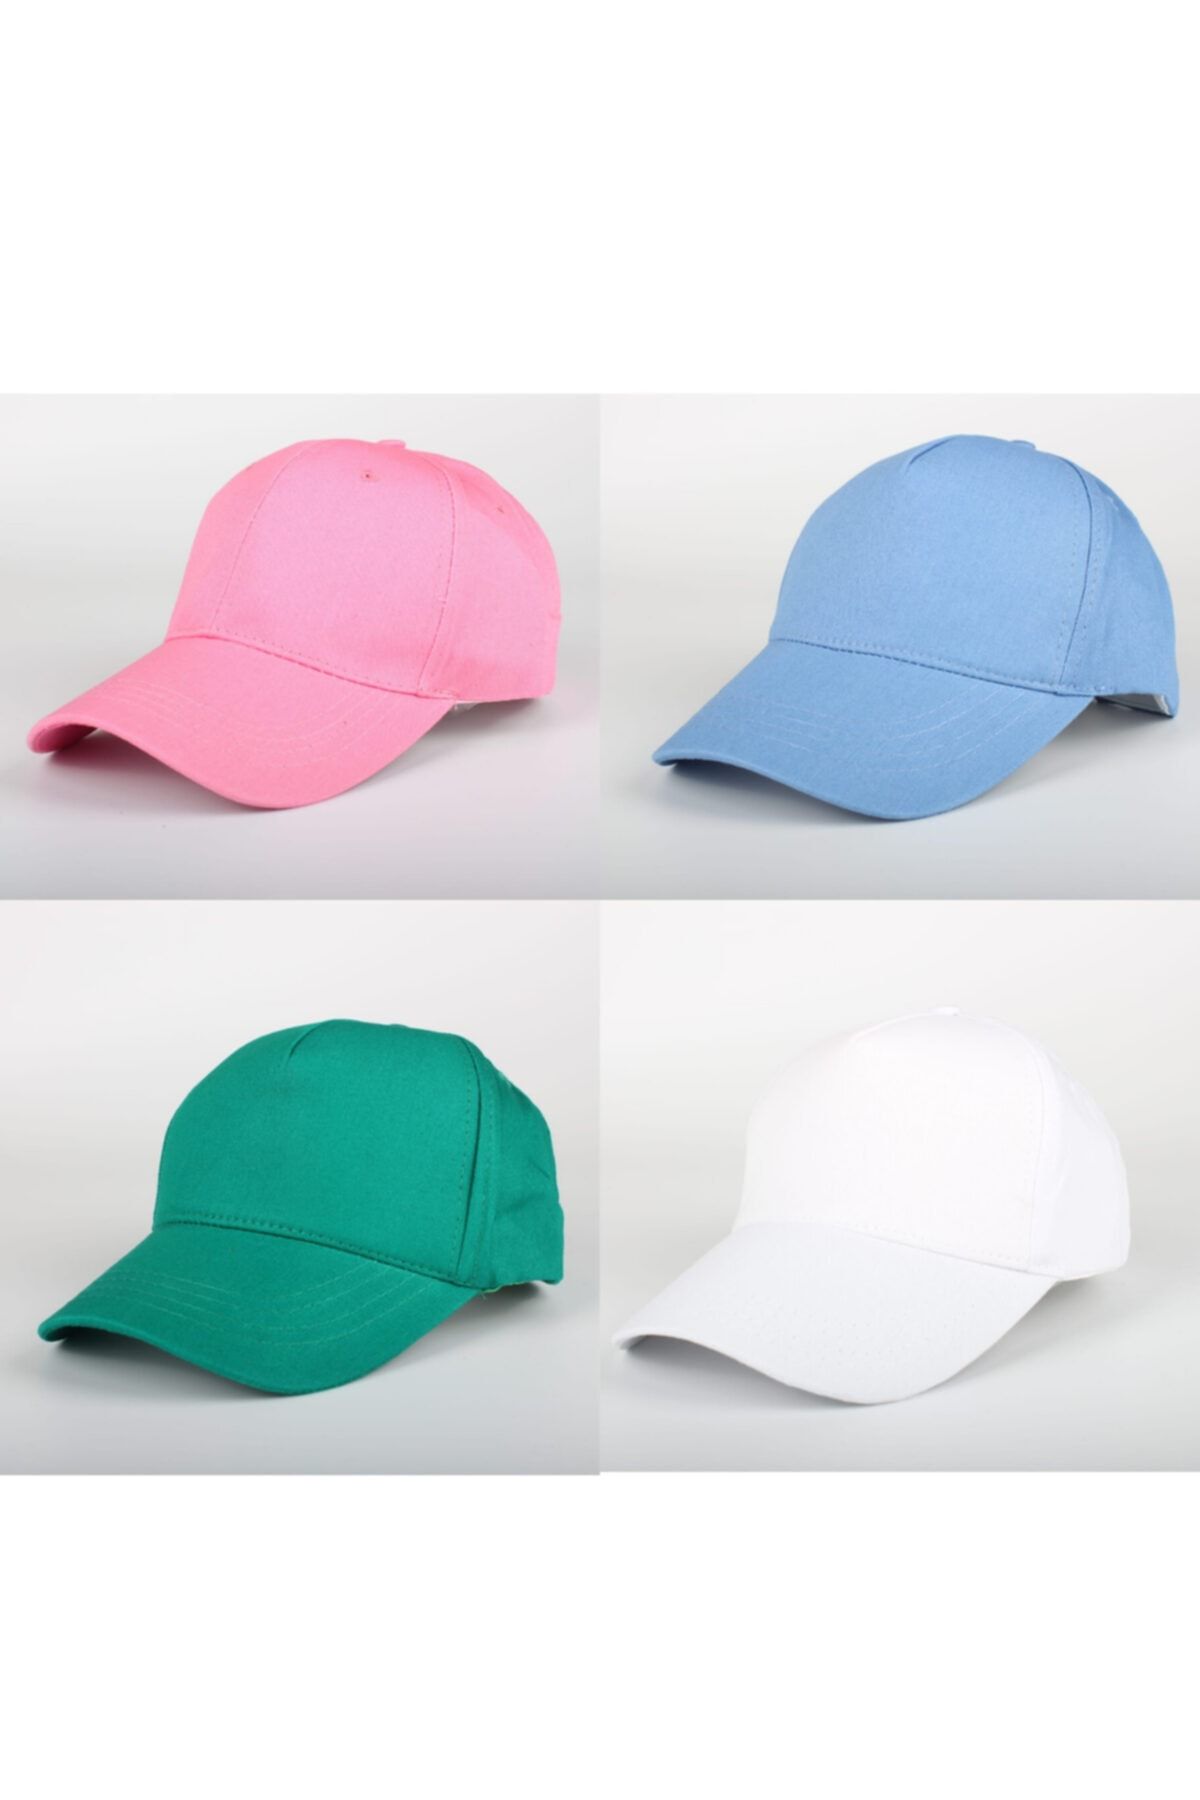 SİYASA Düz Renk Şapka 4lü Kombin Seti